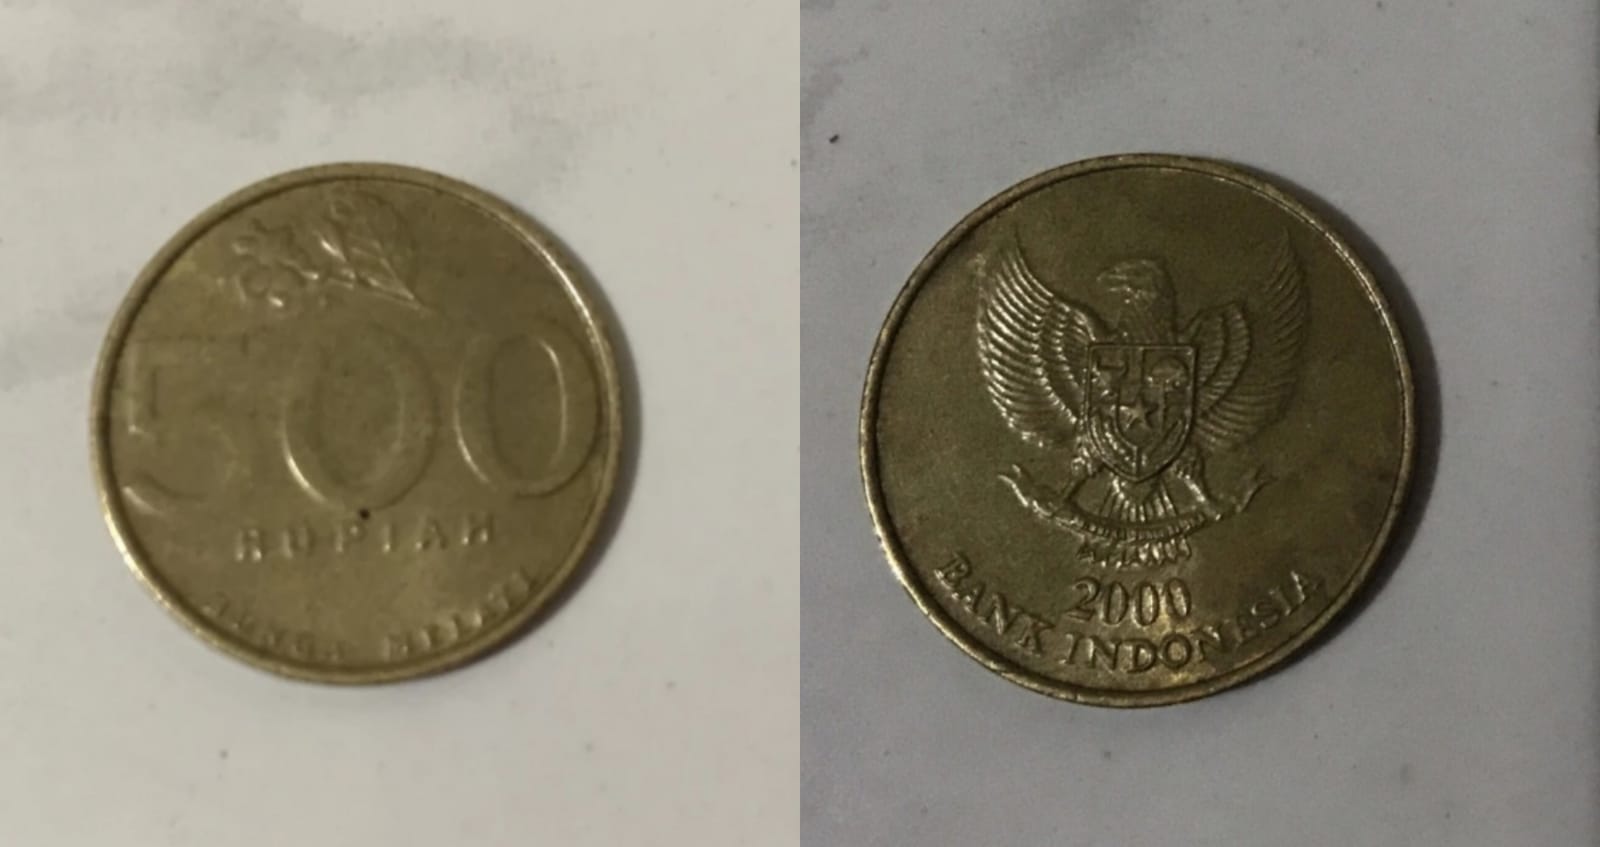 Koin Rp500 Melati Tahun 2000 Bisa Laku hingga Rp5.000.000, Begini Cara Jualnya!